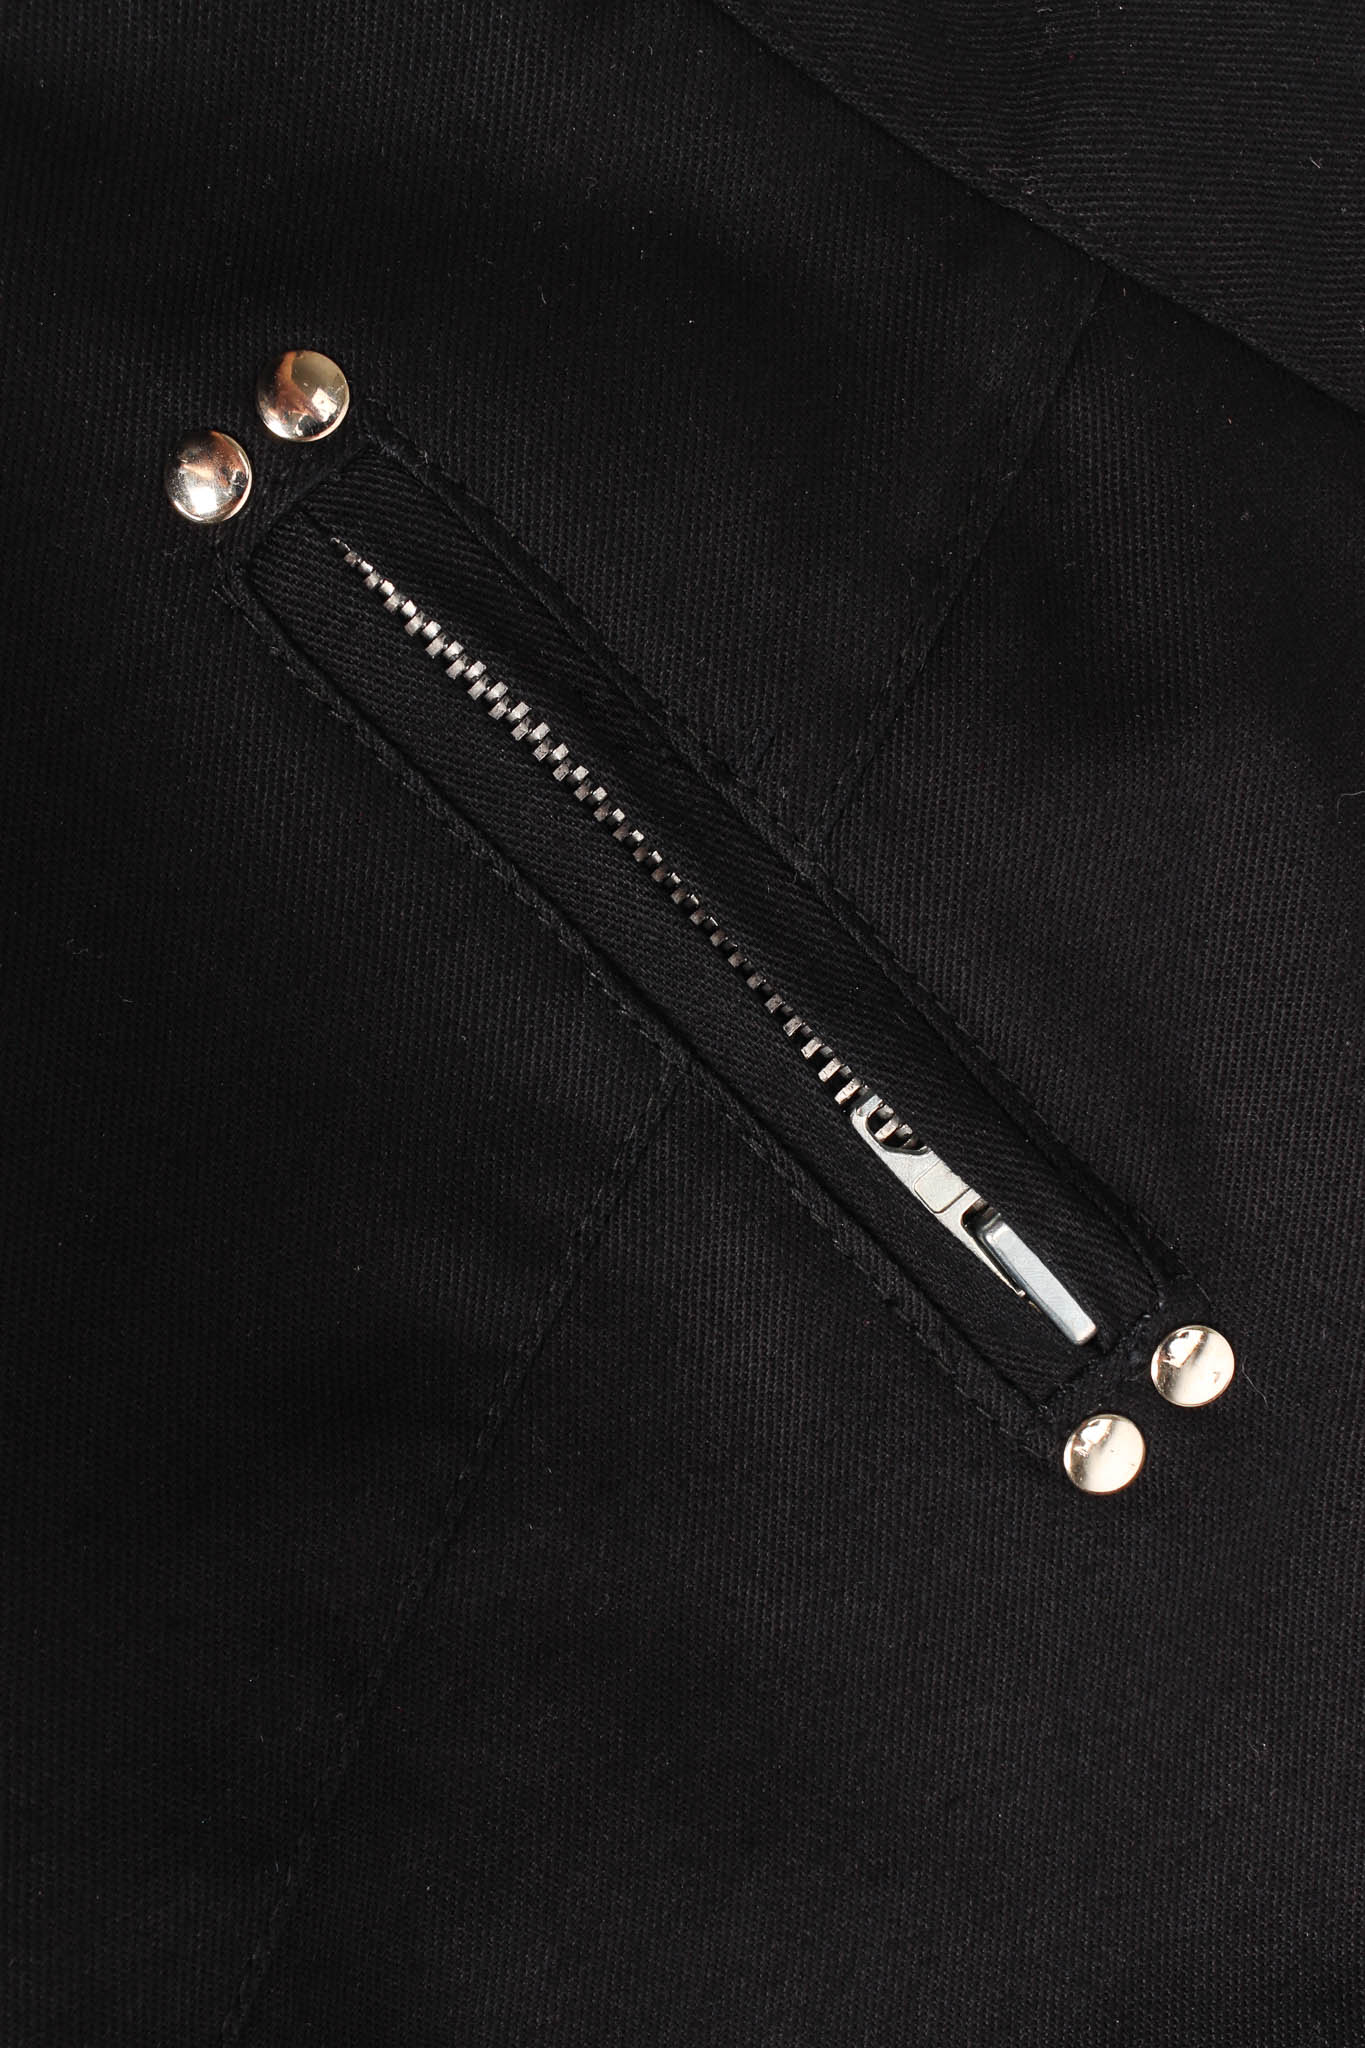 Vintage La Milliardaire Studded Fringe Panel Pant back zipper @ Recess LA